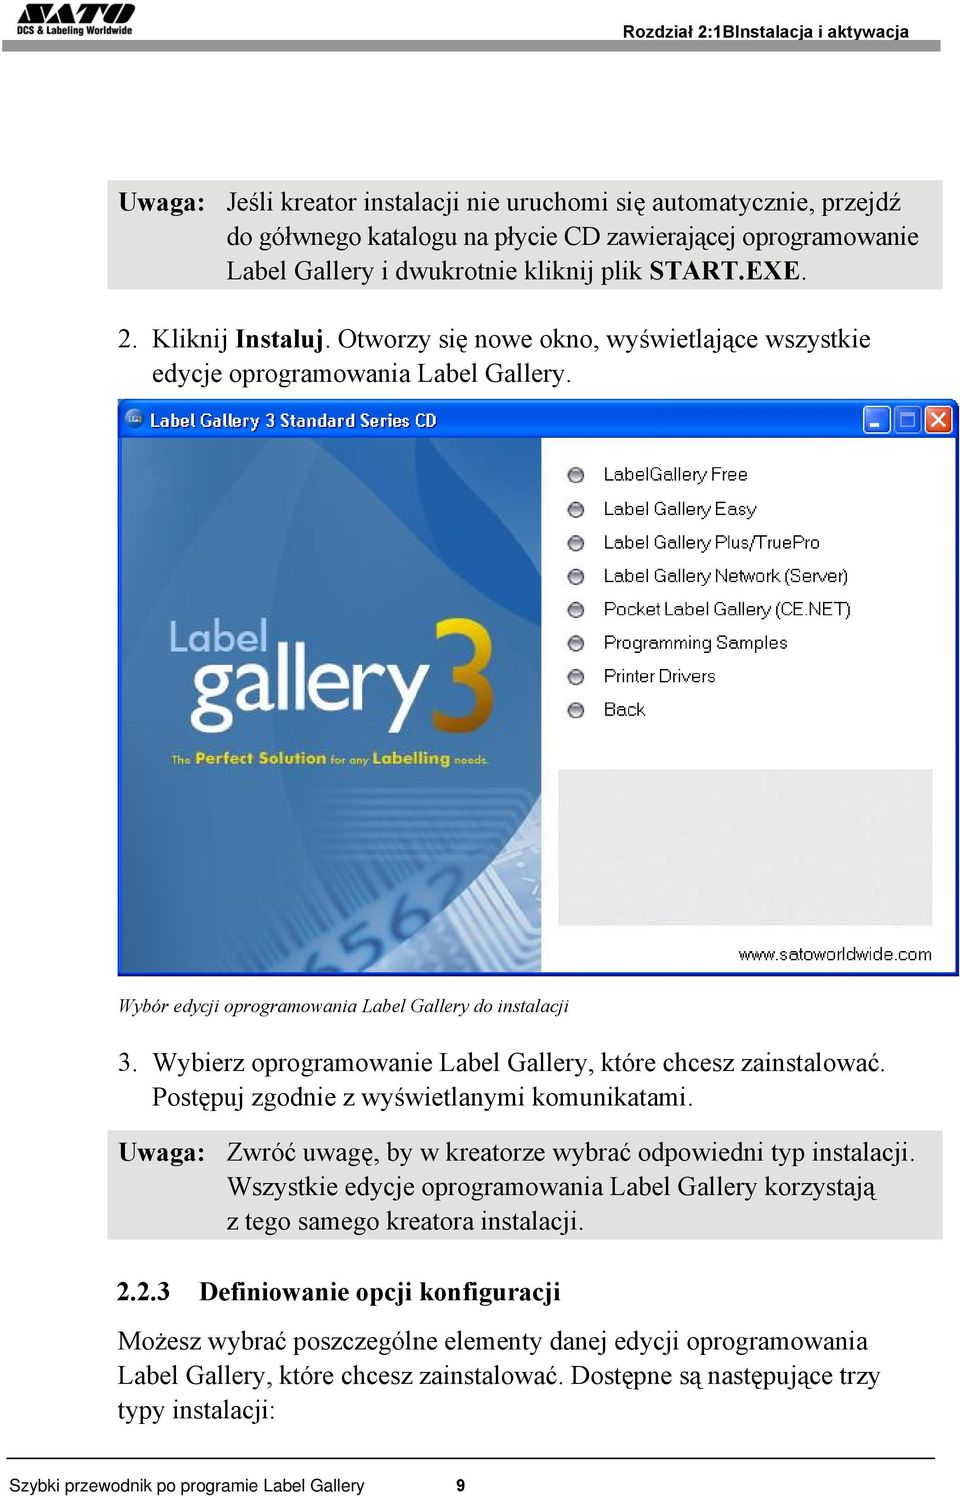 Wybierz oprogramowanie Label Gallery, które chcesz zainstalować. Postępuj zgodnie z wyświetlanymi komunikatami. Uwaga: Zwróć uwagę, by w kreatorze wybrać odpowiedni typ instalacji.